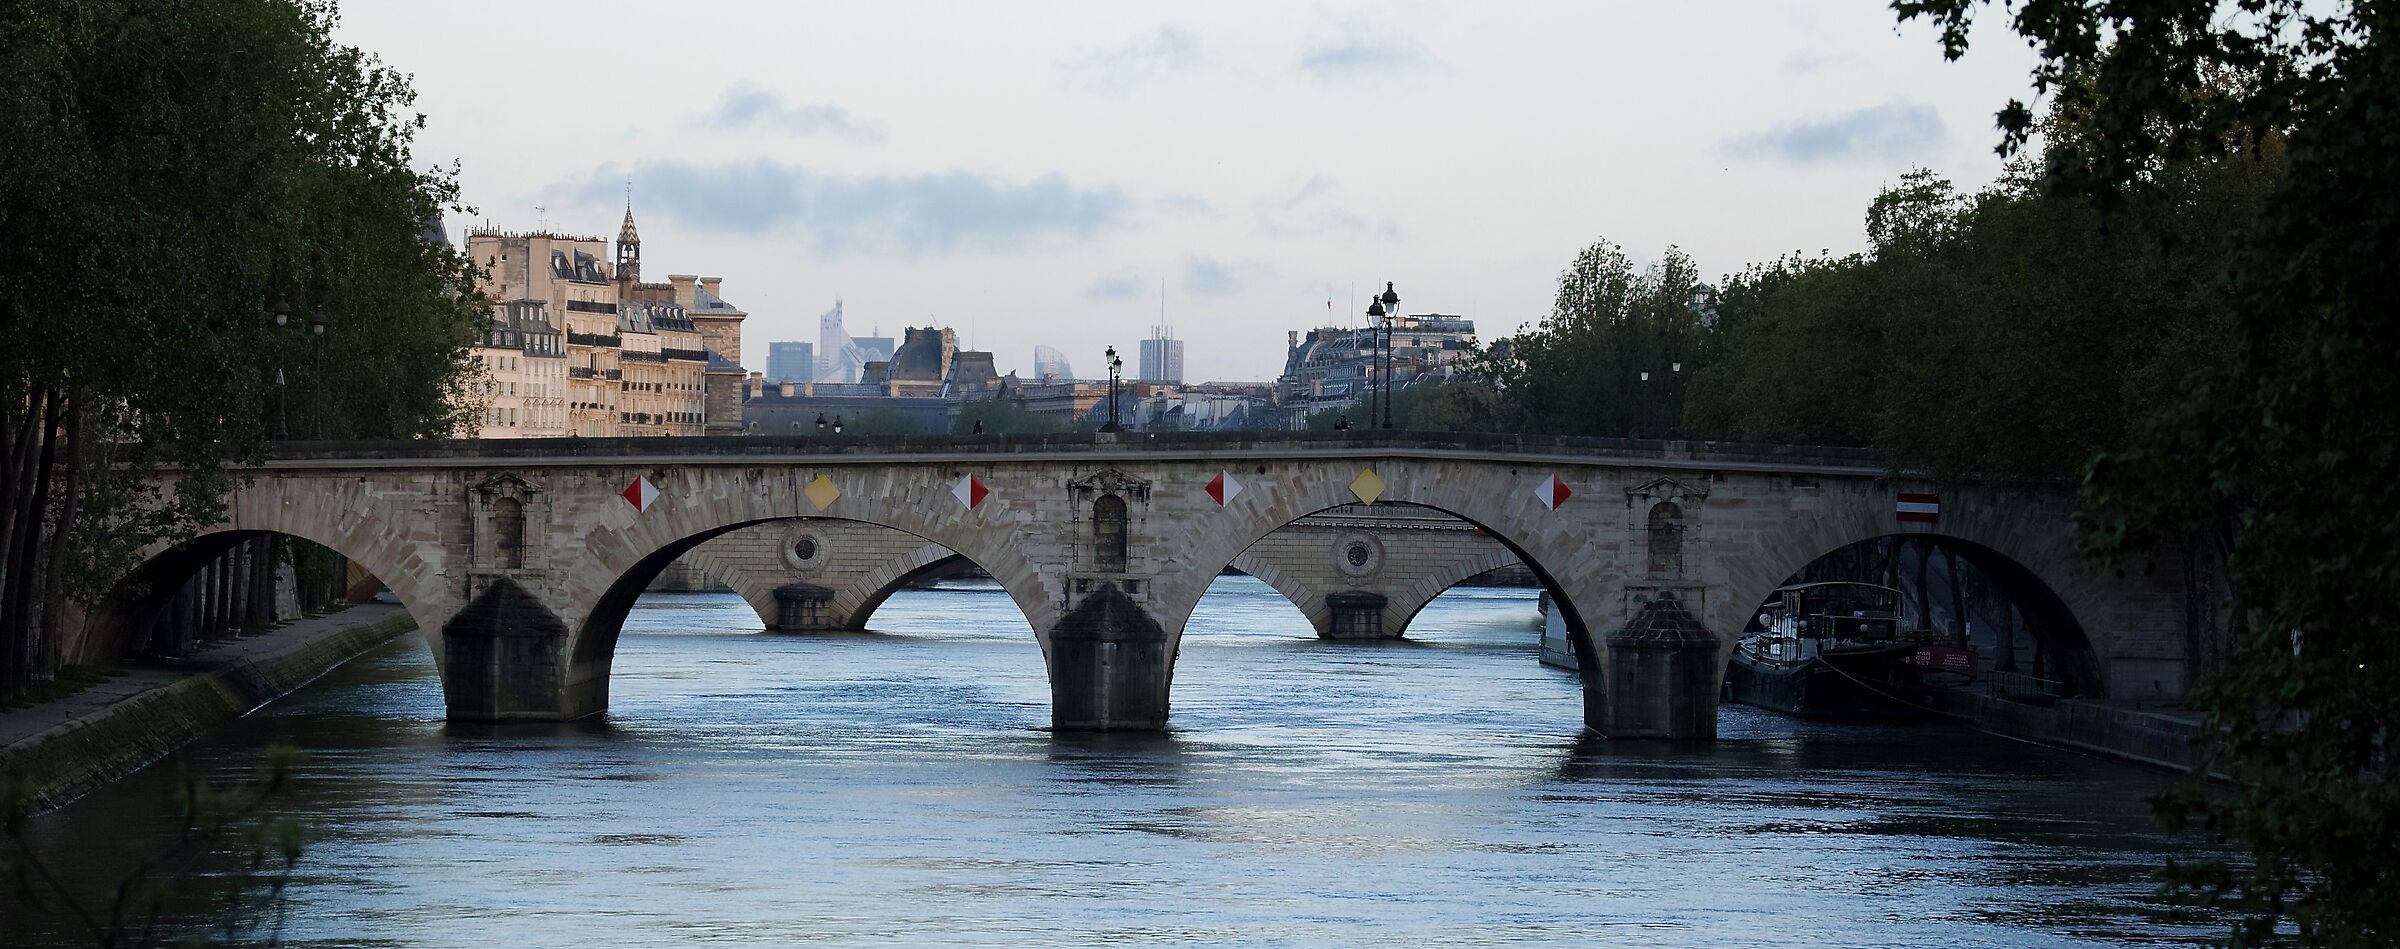 Paris - bridges over the Seine...